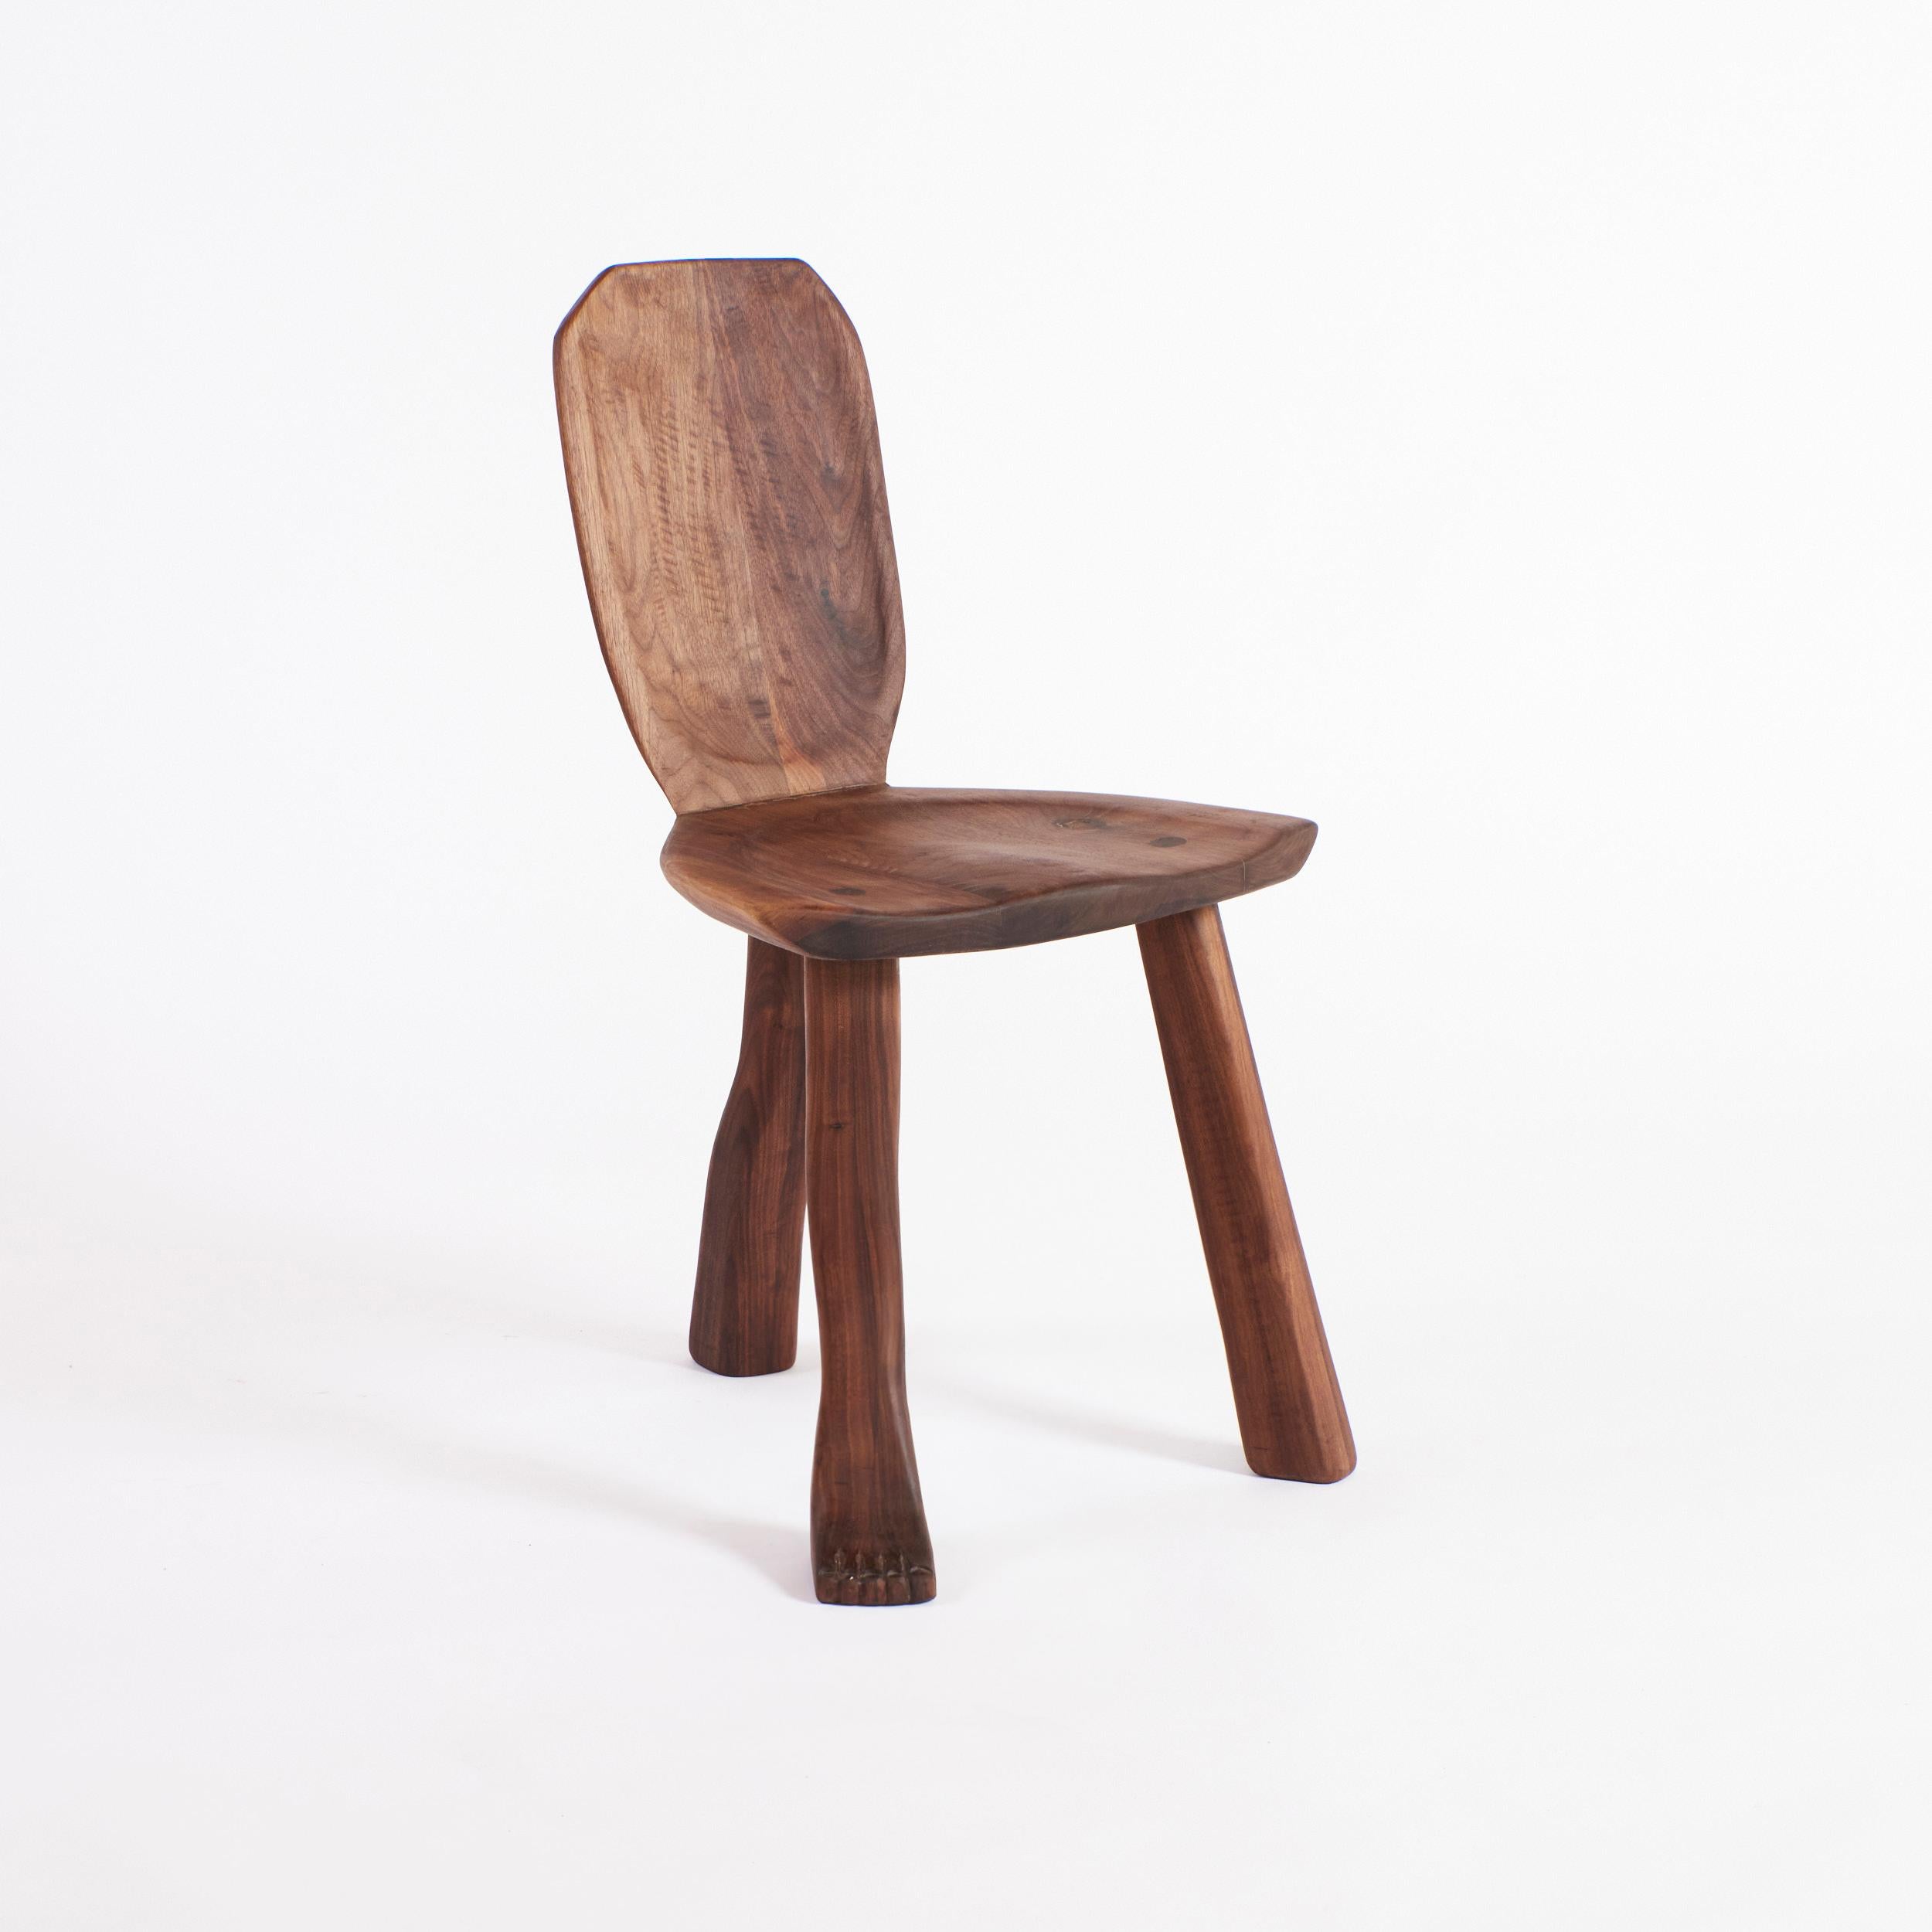 Foot Accent Chair aus Walnussholz
Entworfen von project 213A im Jahr 2023 als Teil der charakteristischen Foot Collection'S der Marke.

Der 